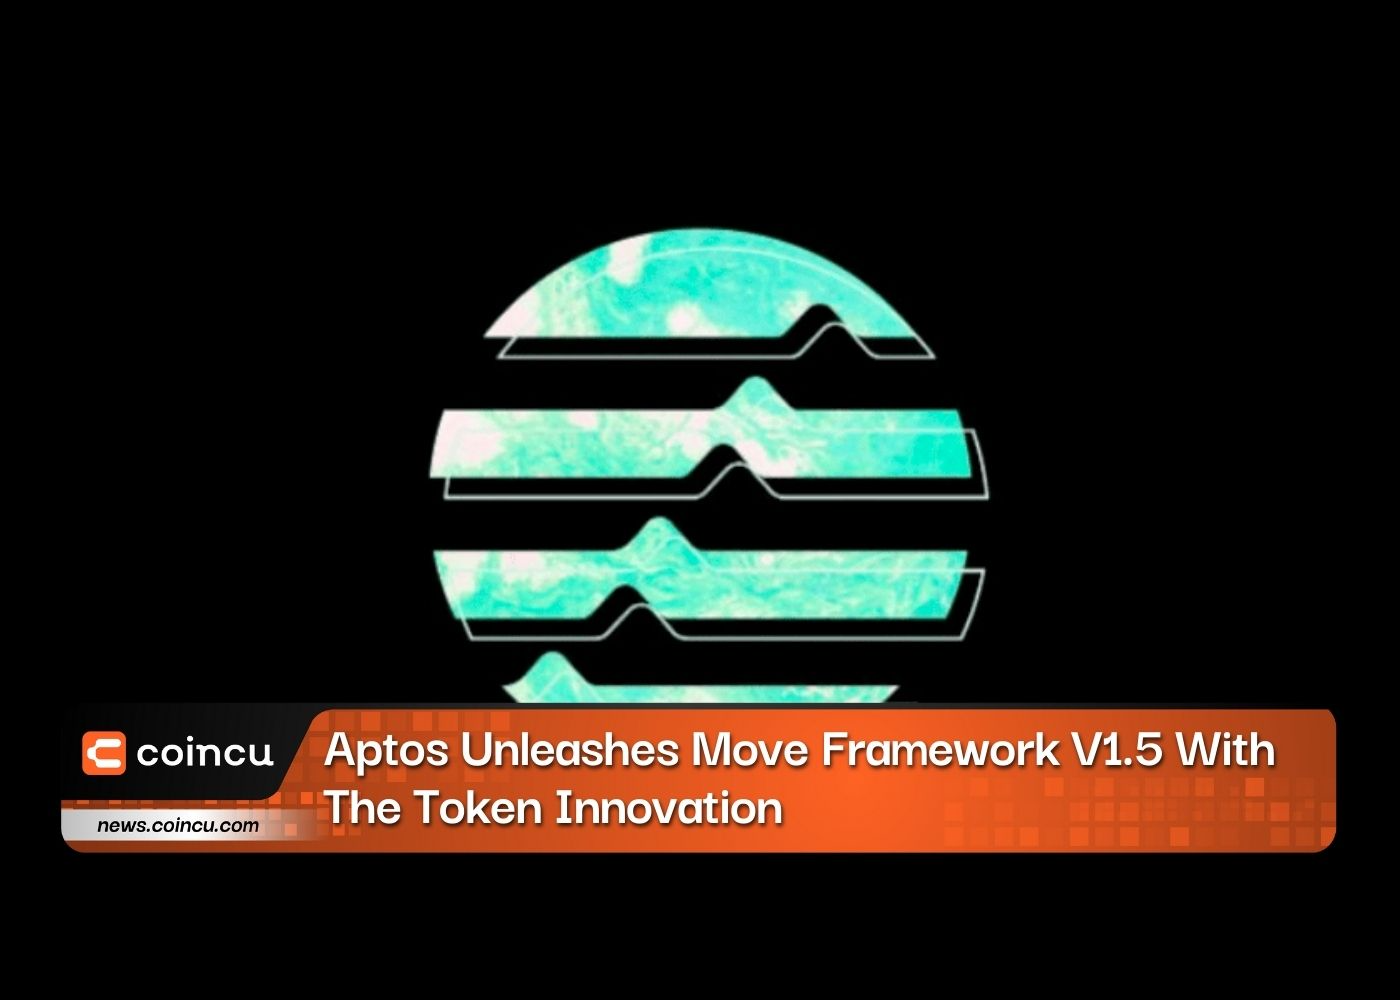 एप्टोस ने टोकन इनोवेशन के साथ मूव फ्रेमवर्क V1.5 लॉन्च किया